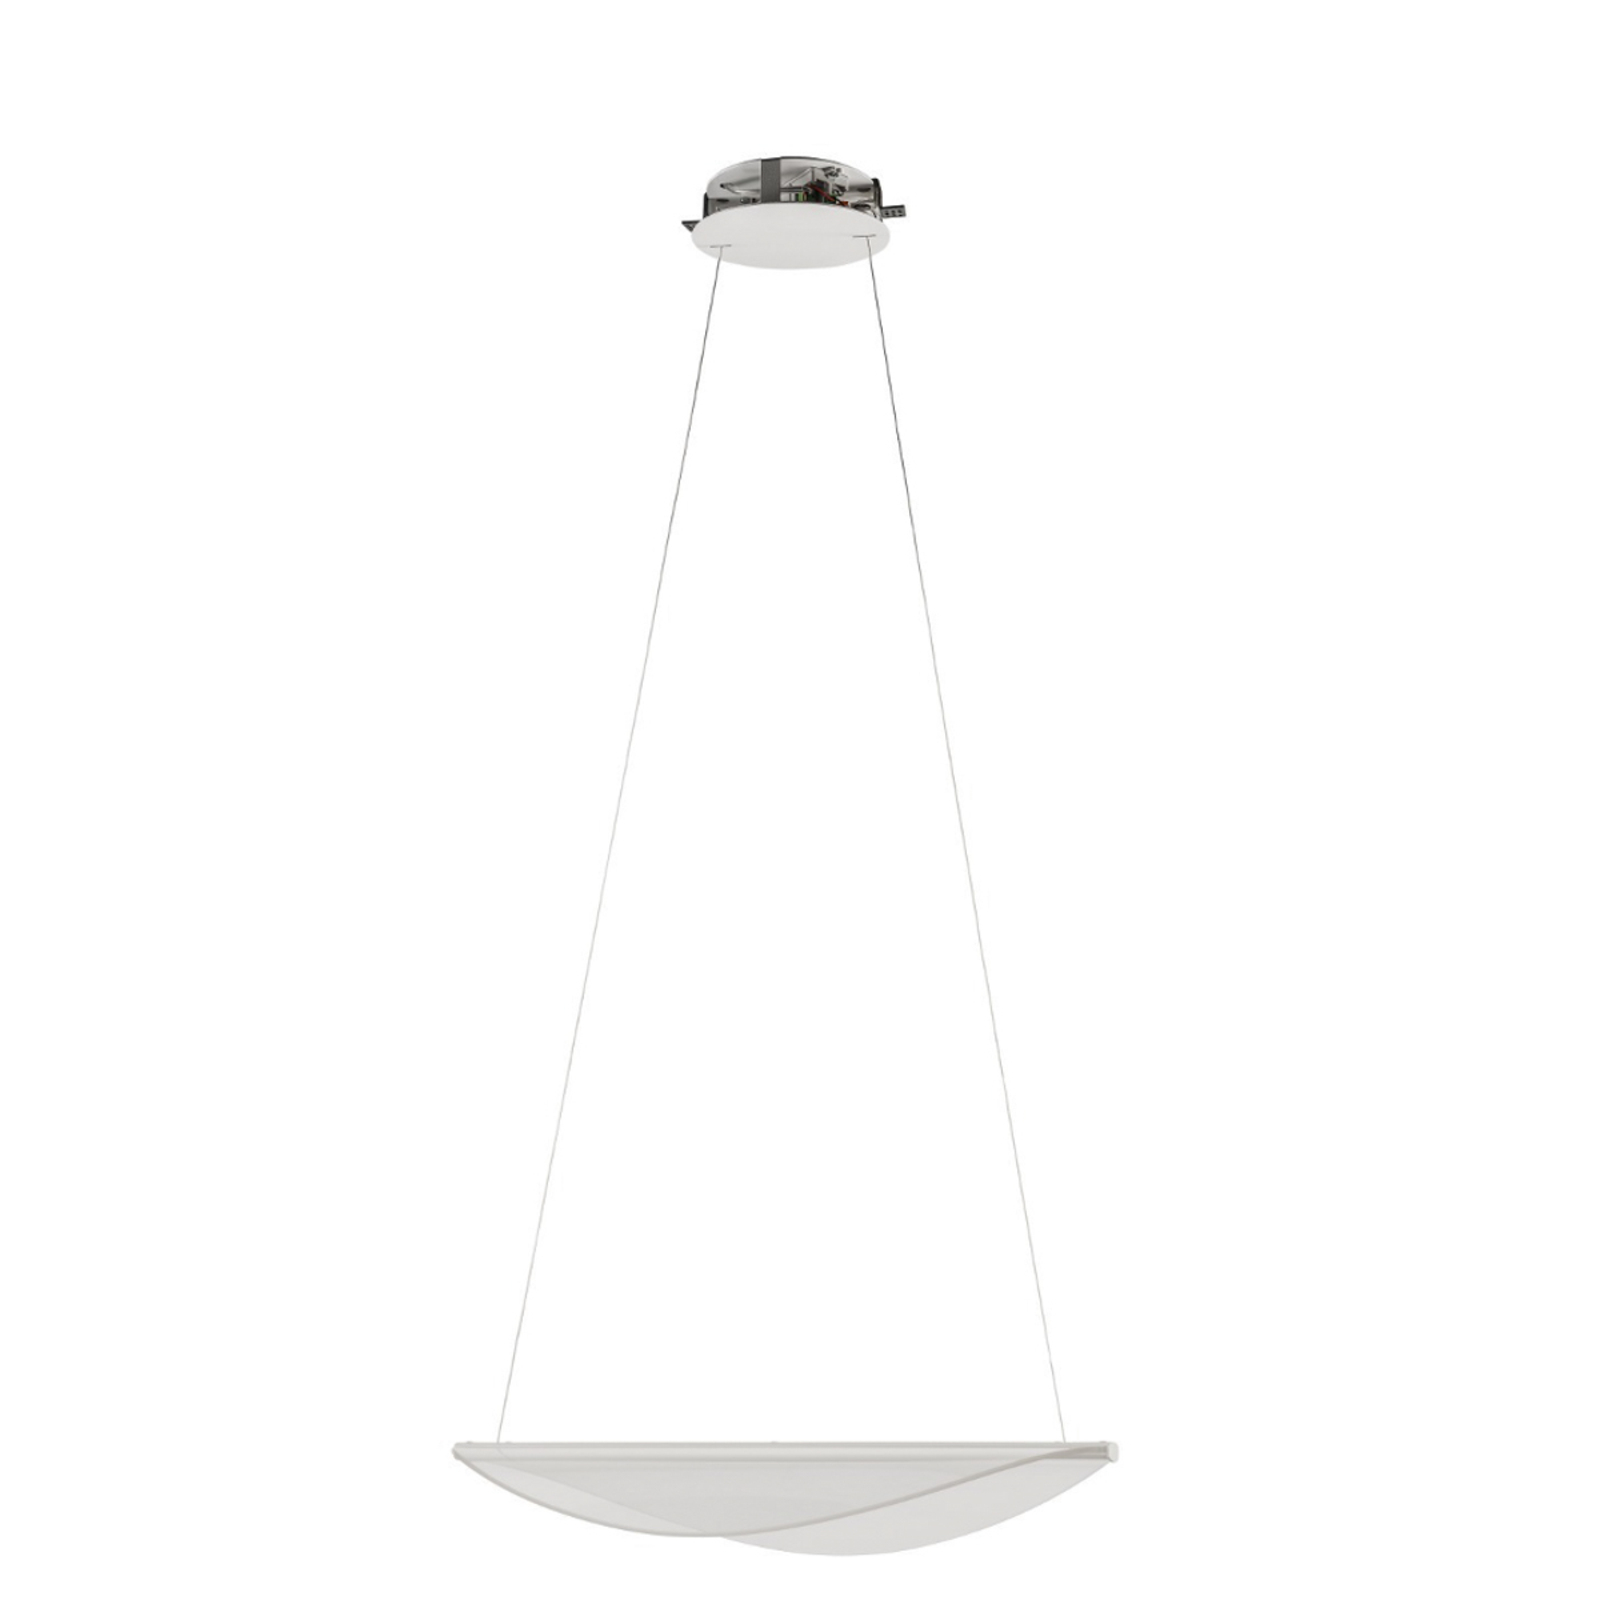 Stilnovo Diphy lampa wisząca LED biała długość 53,6 cm